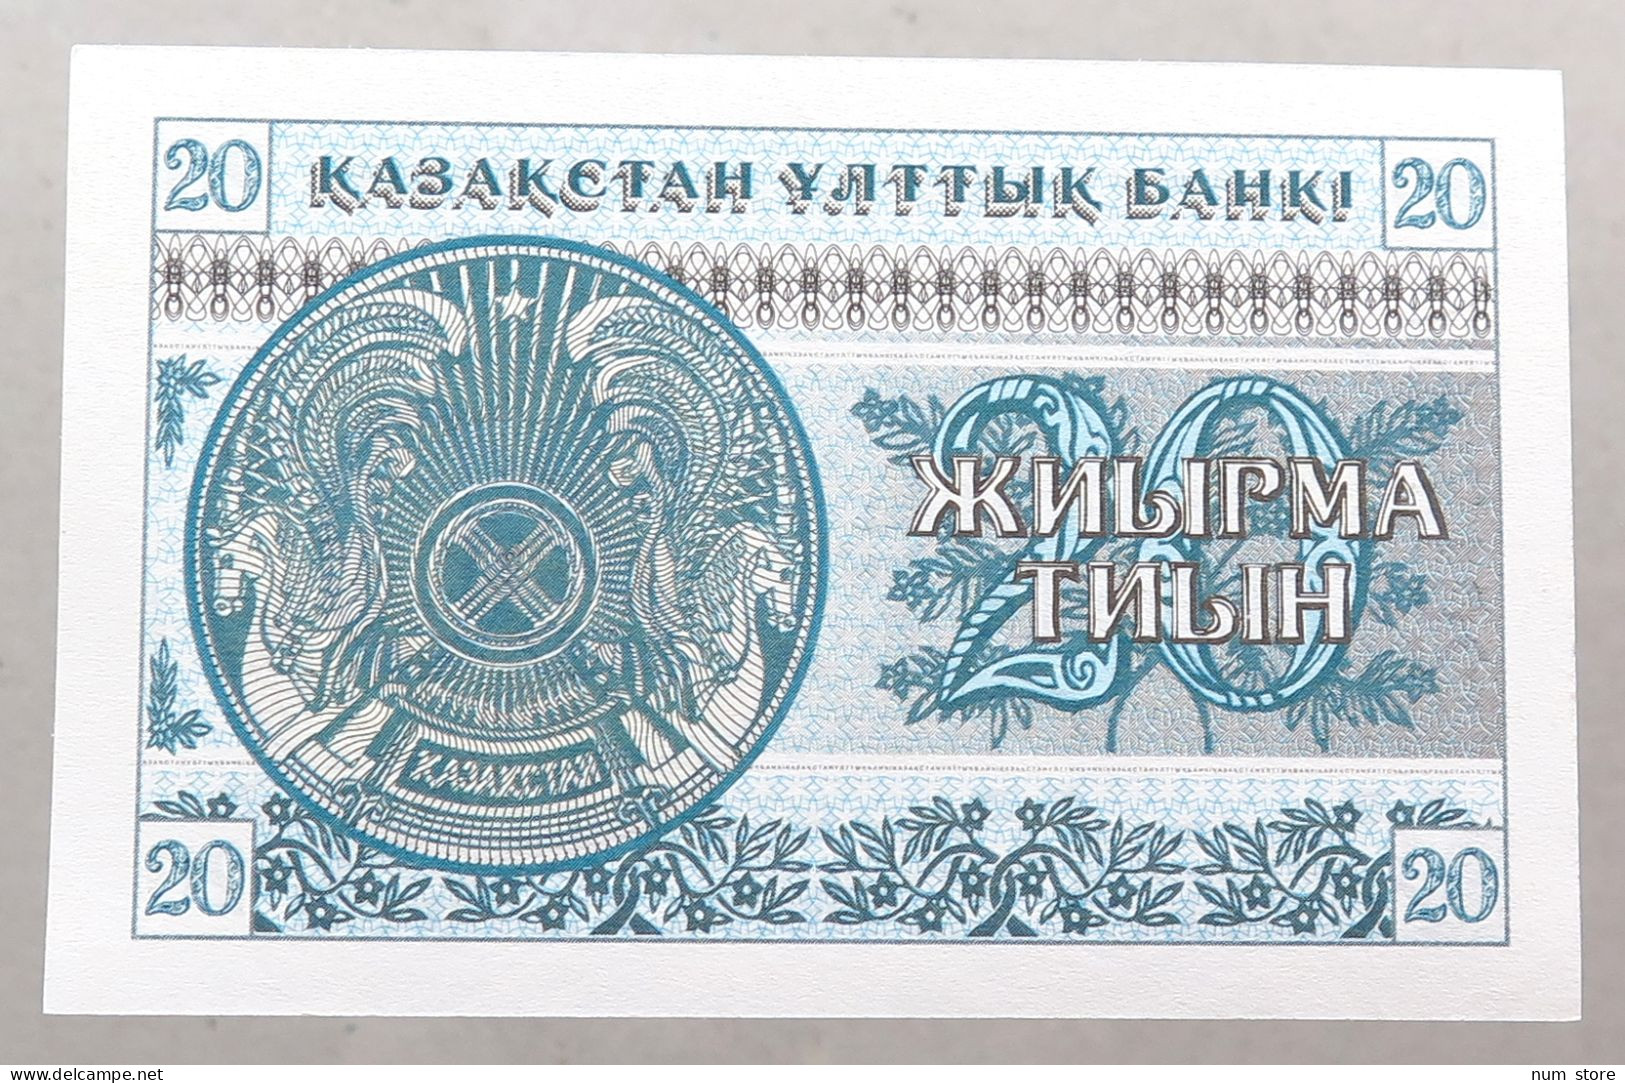 KAZAKHSTAN 20 TENGE 1993 TOP #alb051 1577 - Kazakhstan